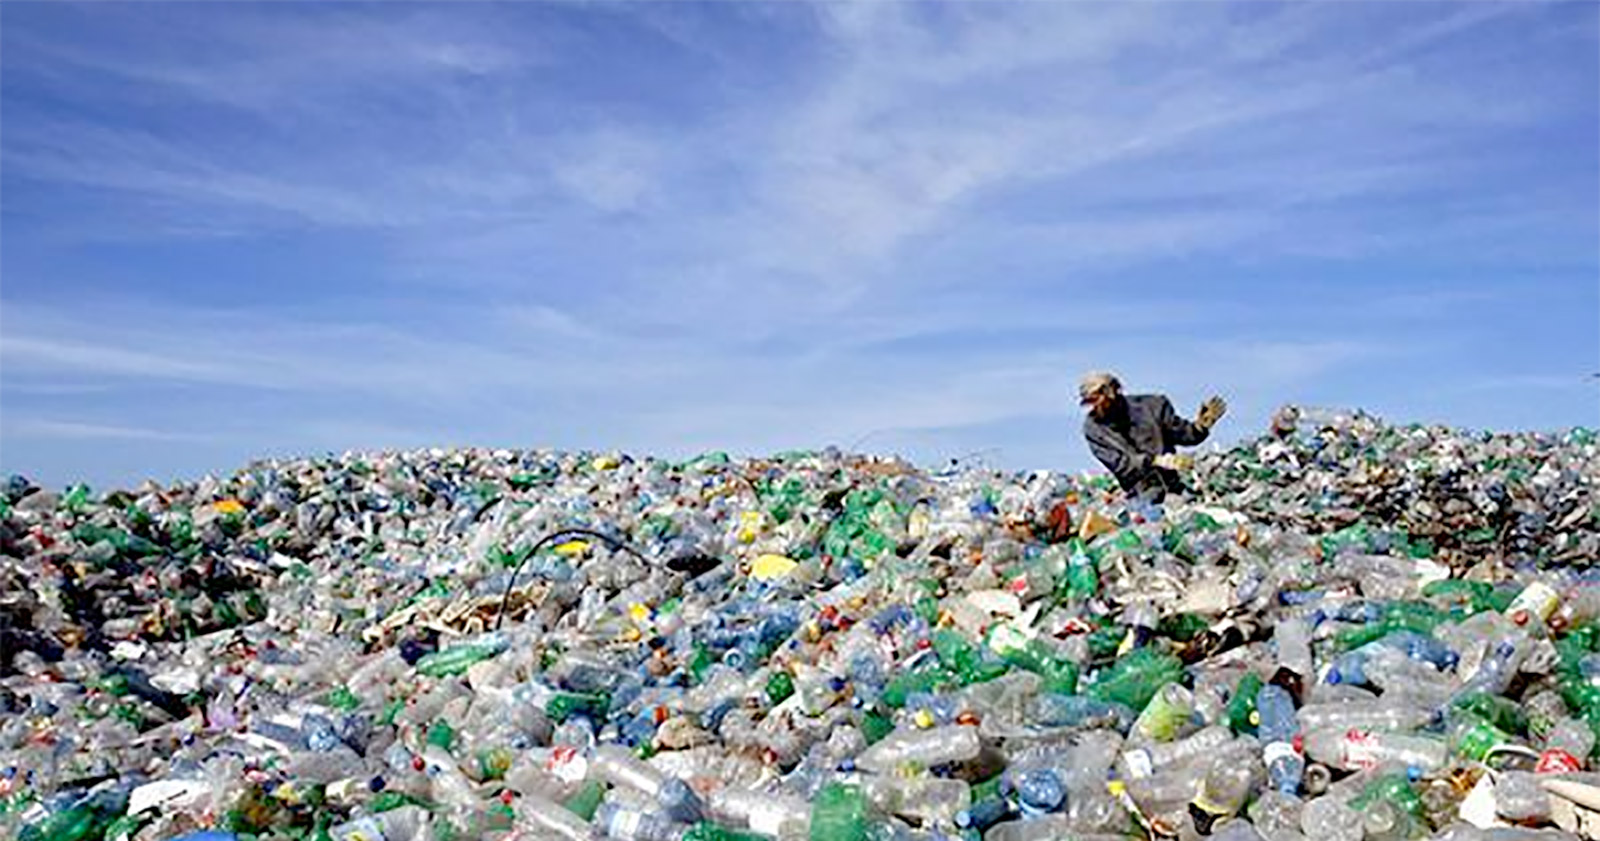   أغرب خمس حلول للتخلص من أزمة البلاستيك